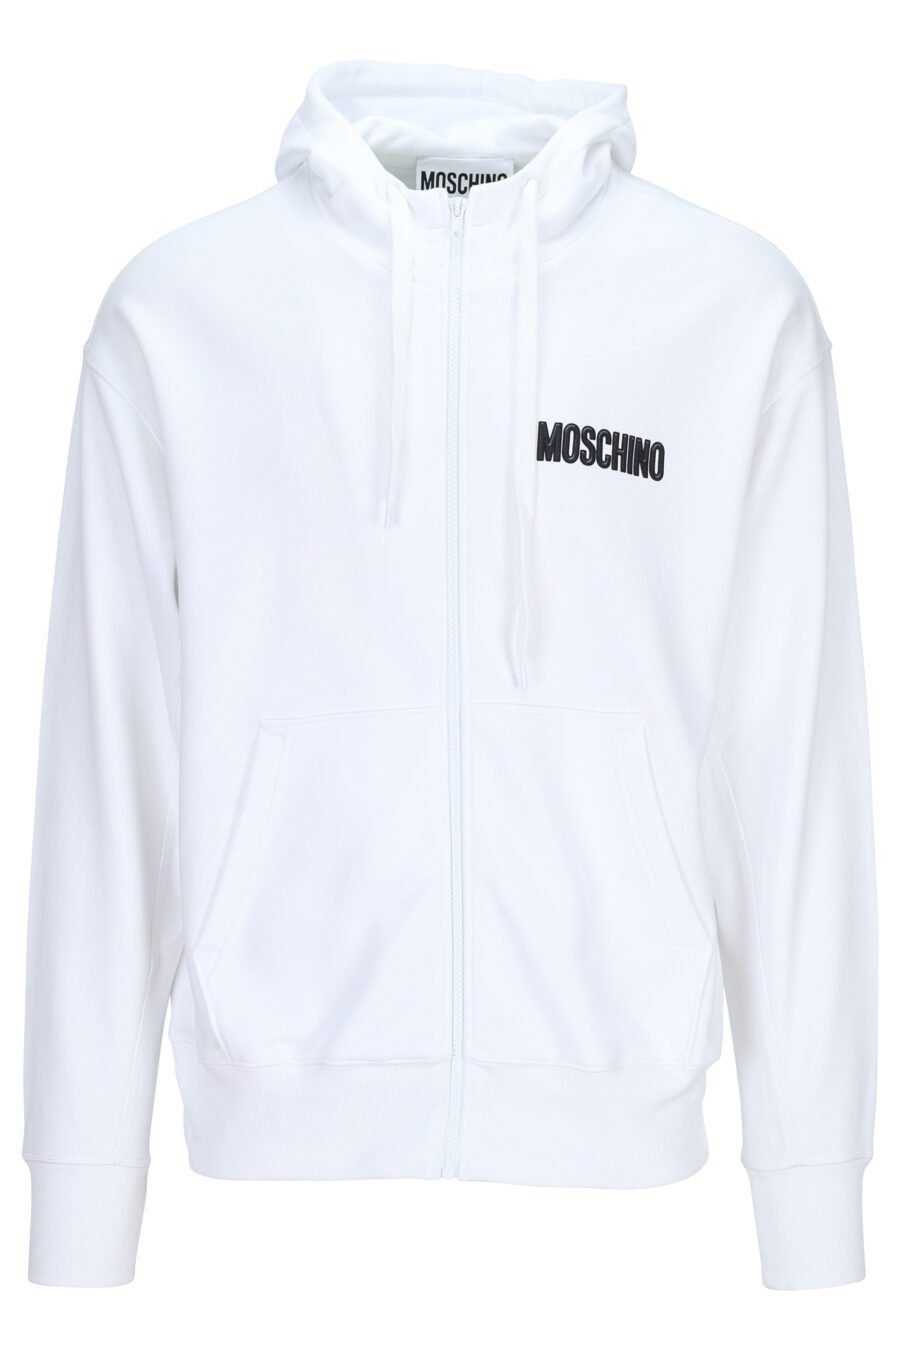 Weißes Öko-Sweatshirt mit Kapuze und schwarzem "Teddy"-Maxi-Logo auf dem Rücken - 889316854763